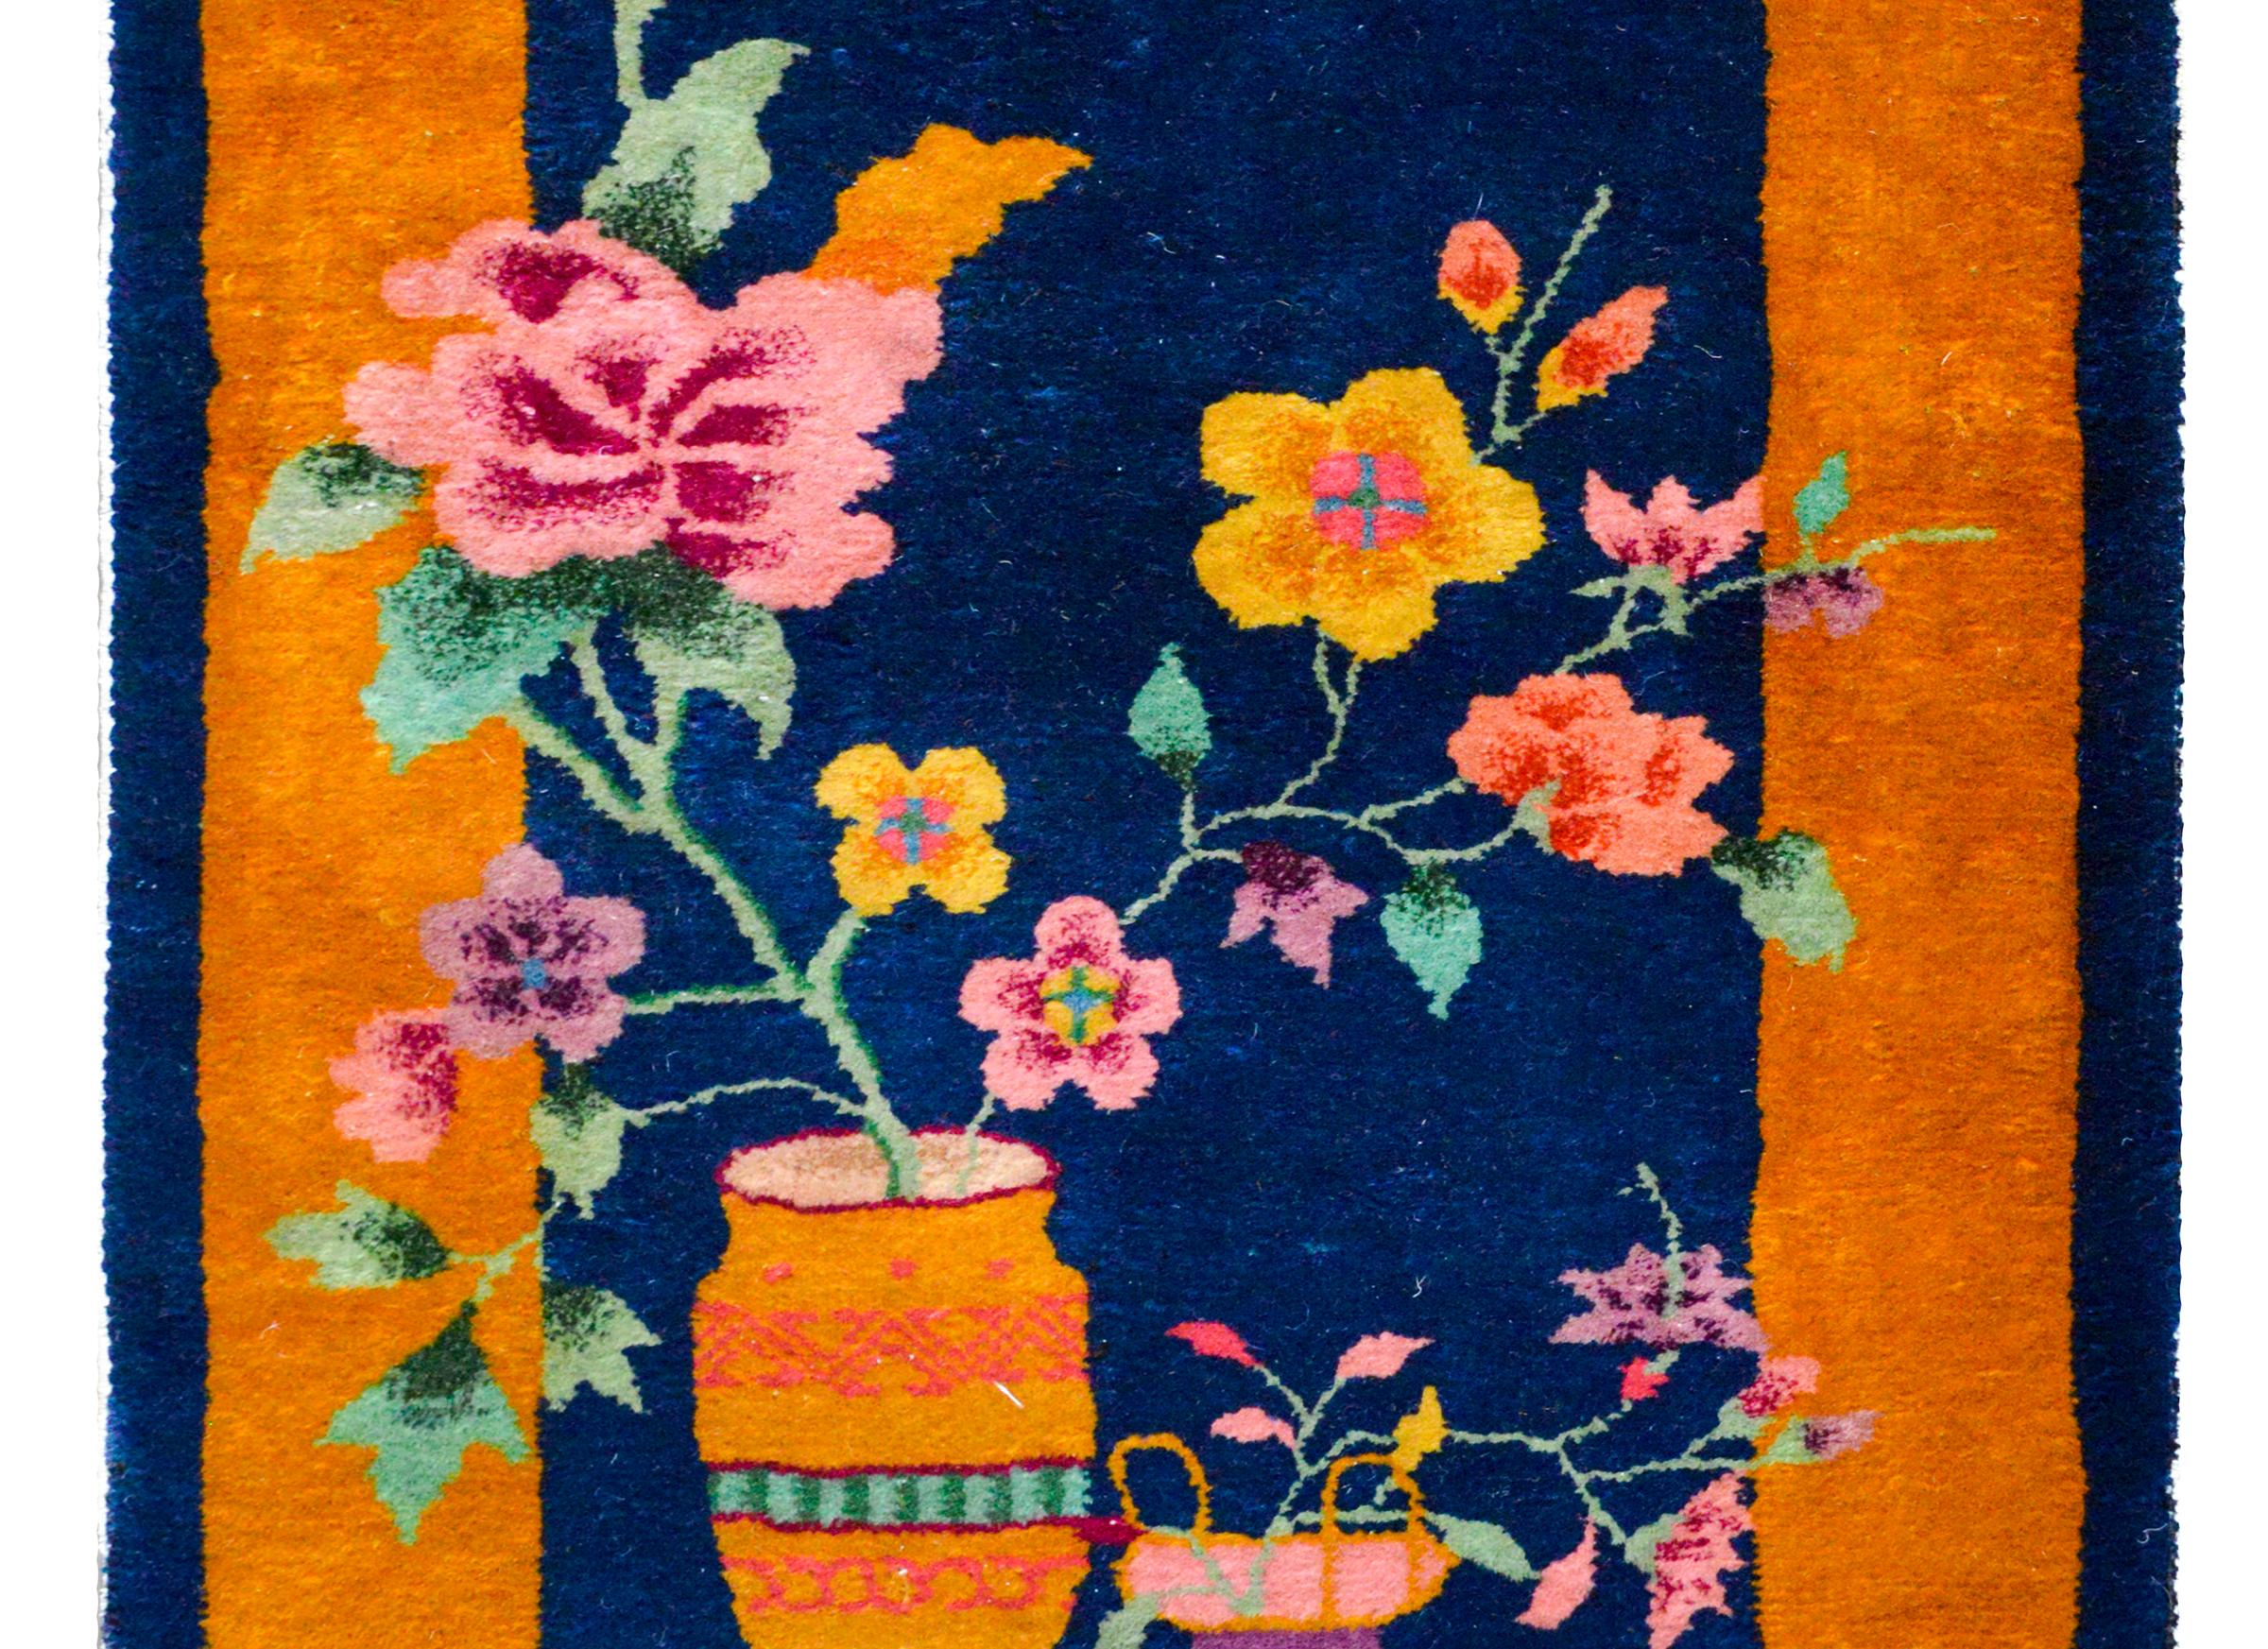 Ein wundervoller chinesischer Art-Déco-Teppich aus dem frühen 20. Jahrhundert mit mehrfarbigen Pfingstrosen- und Chrysanthemenpflanzen, die jeweils in einer Vase eingetopft sind, vor einem dunklen indigoblauen Hintergrund und umgeben von einer